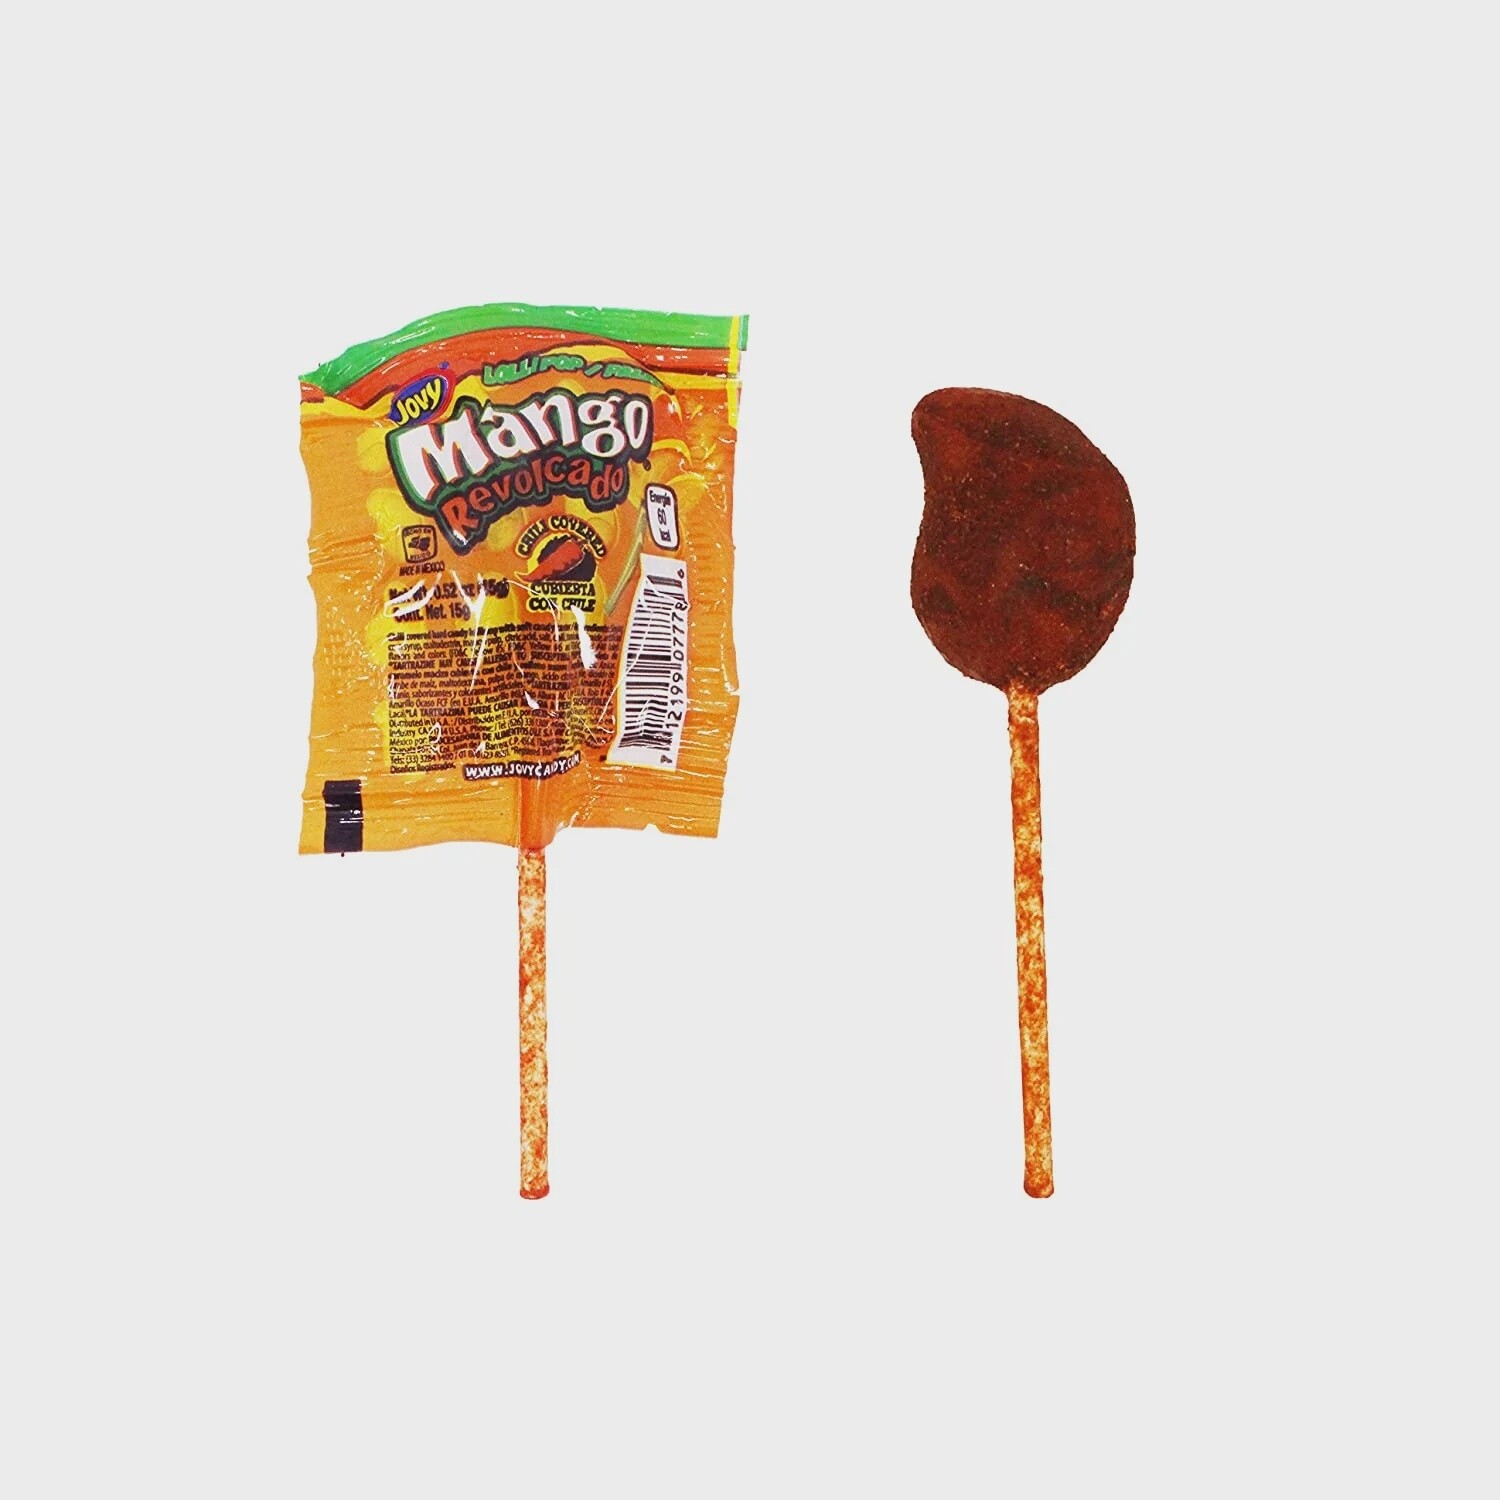 Revolcado Mexican Lollipop - Mango